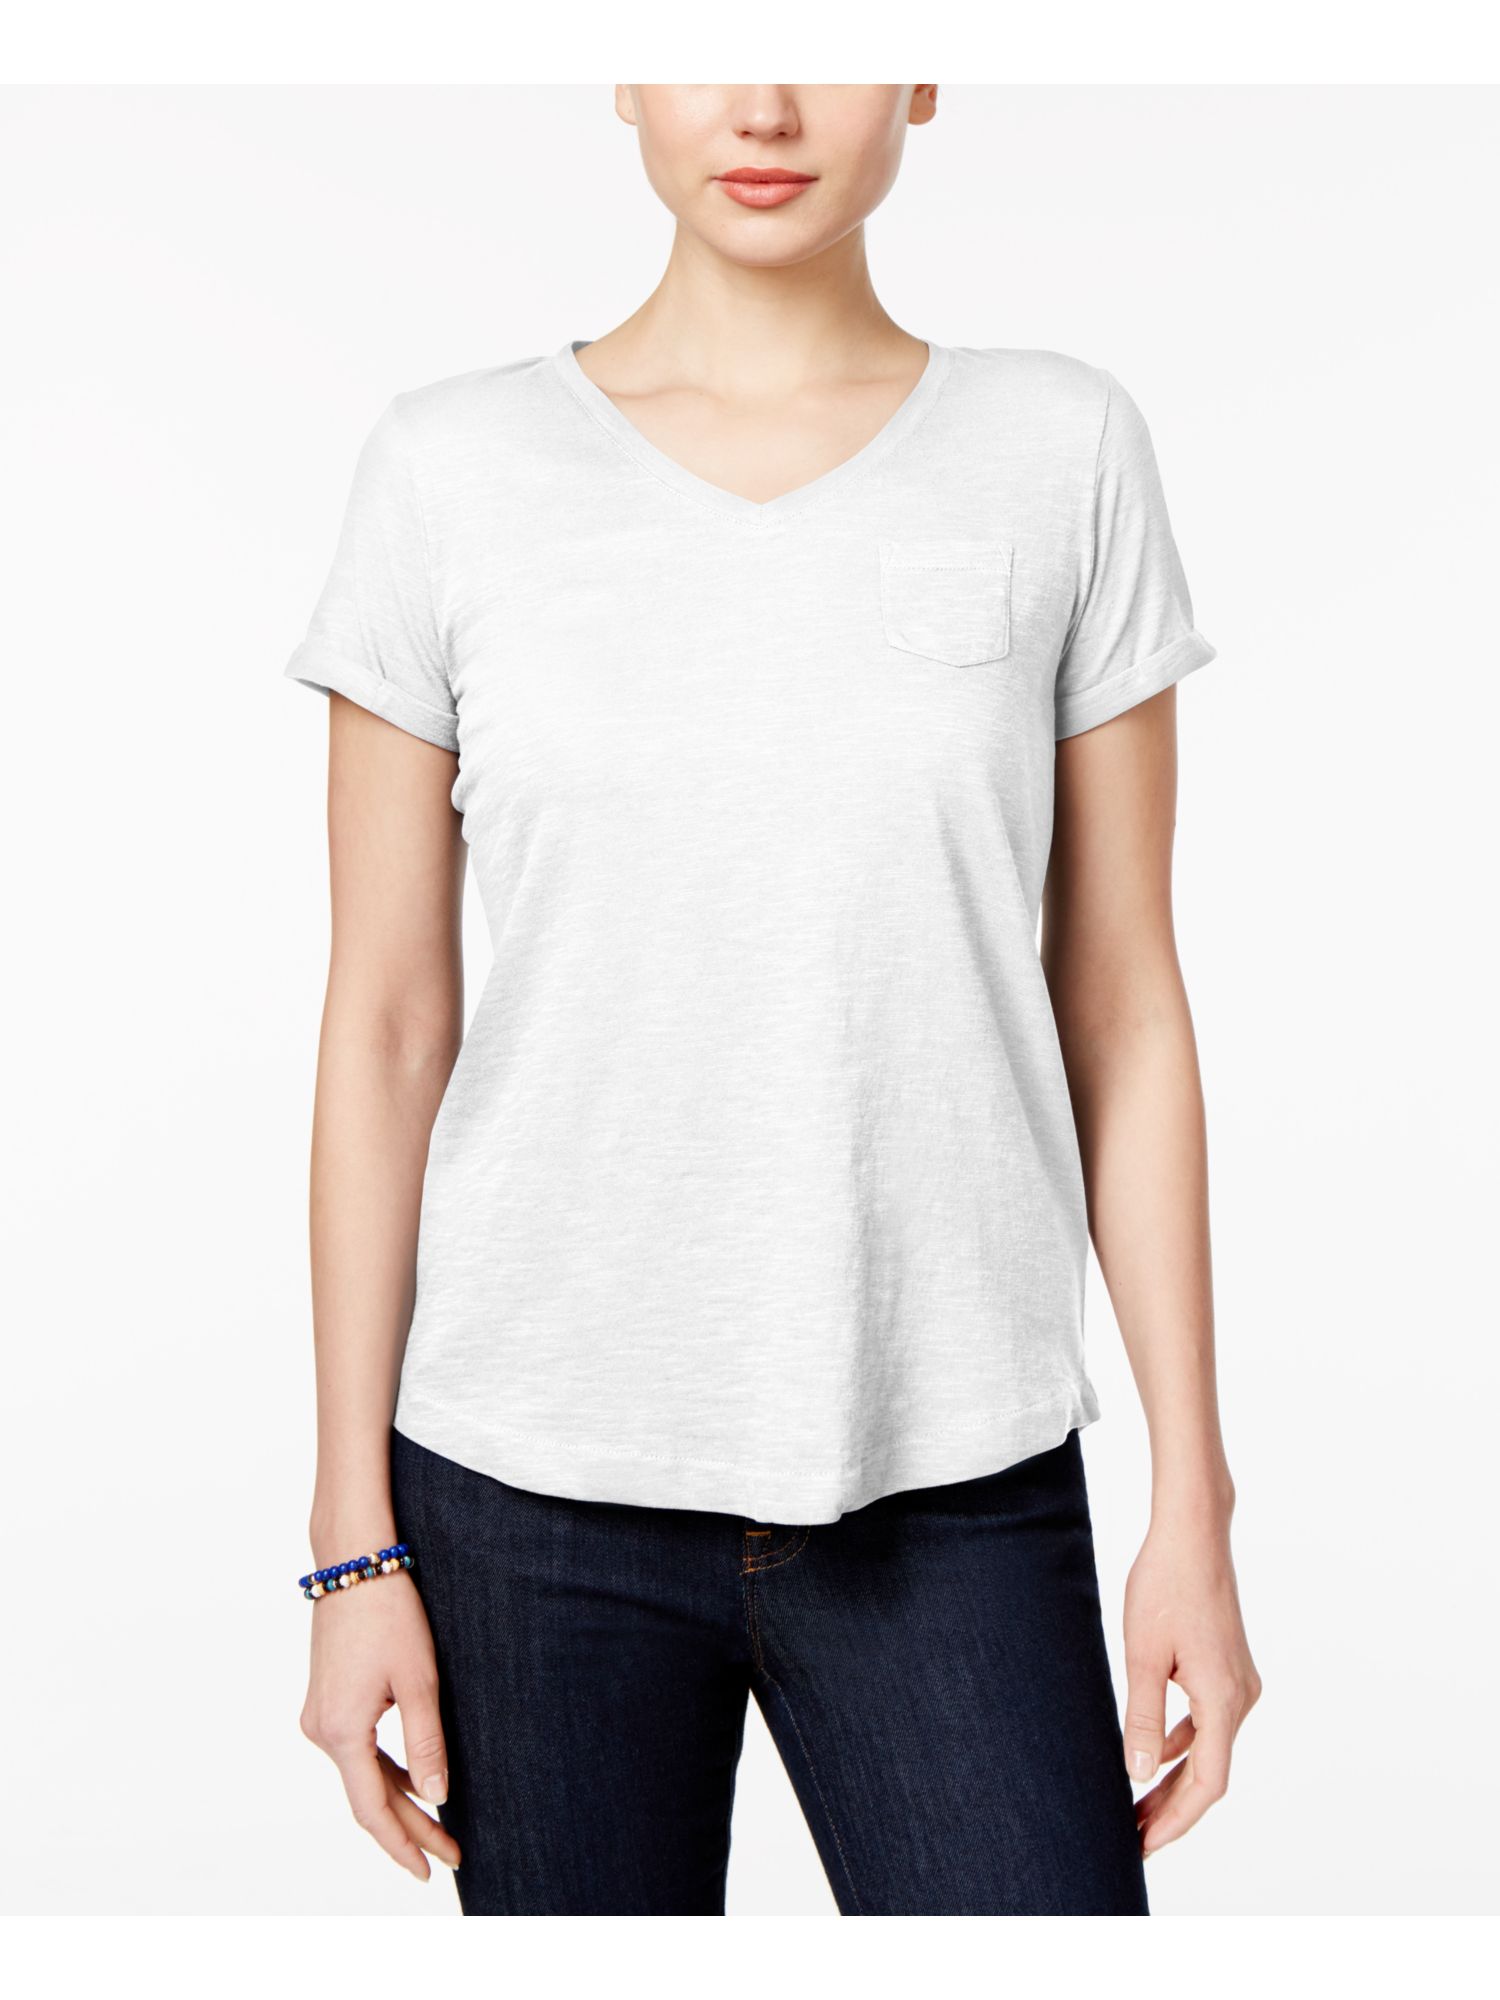 STYLE & COMPANY Womens Gray Short Sleeve T-Shirt PP